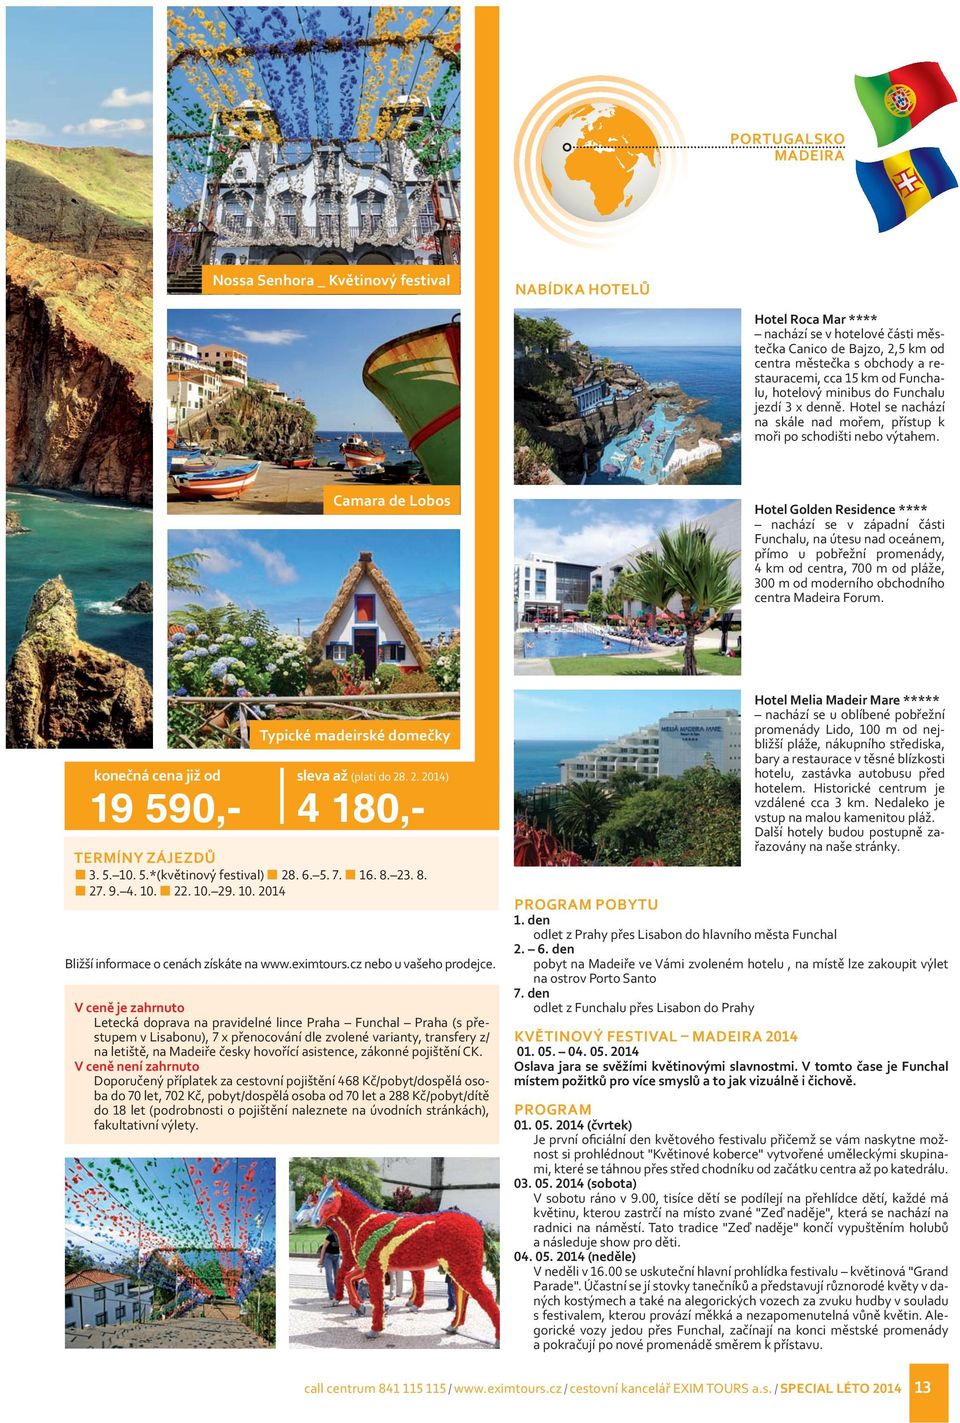 Camara de Lobos Hotel Golden Residence **** nachází se v západní části Funchalu, na útesu nad oceánem, přímo u pobřežní promenády, 4 km od centra, 700 m od pláže, 300 m od moderního obchodního centra